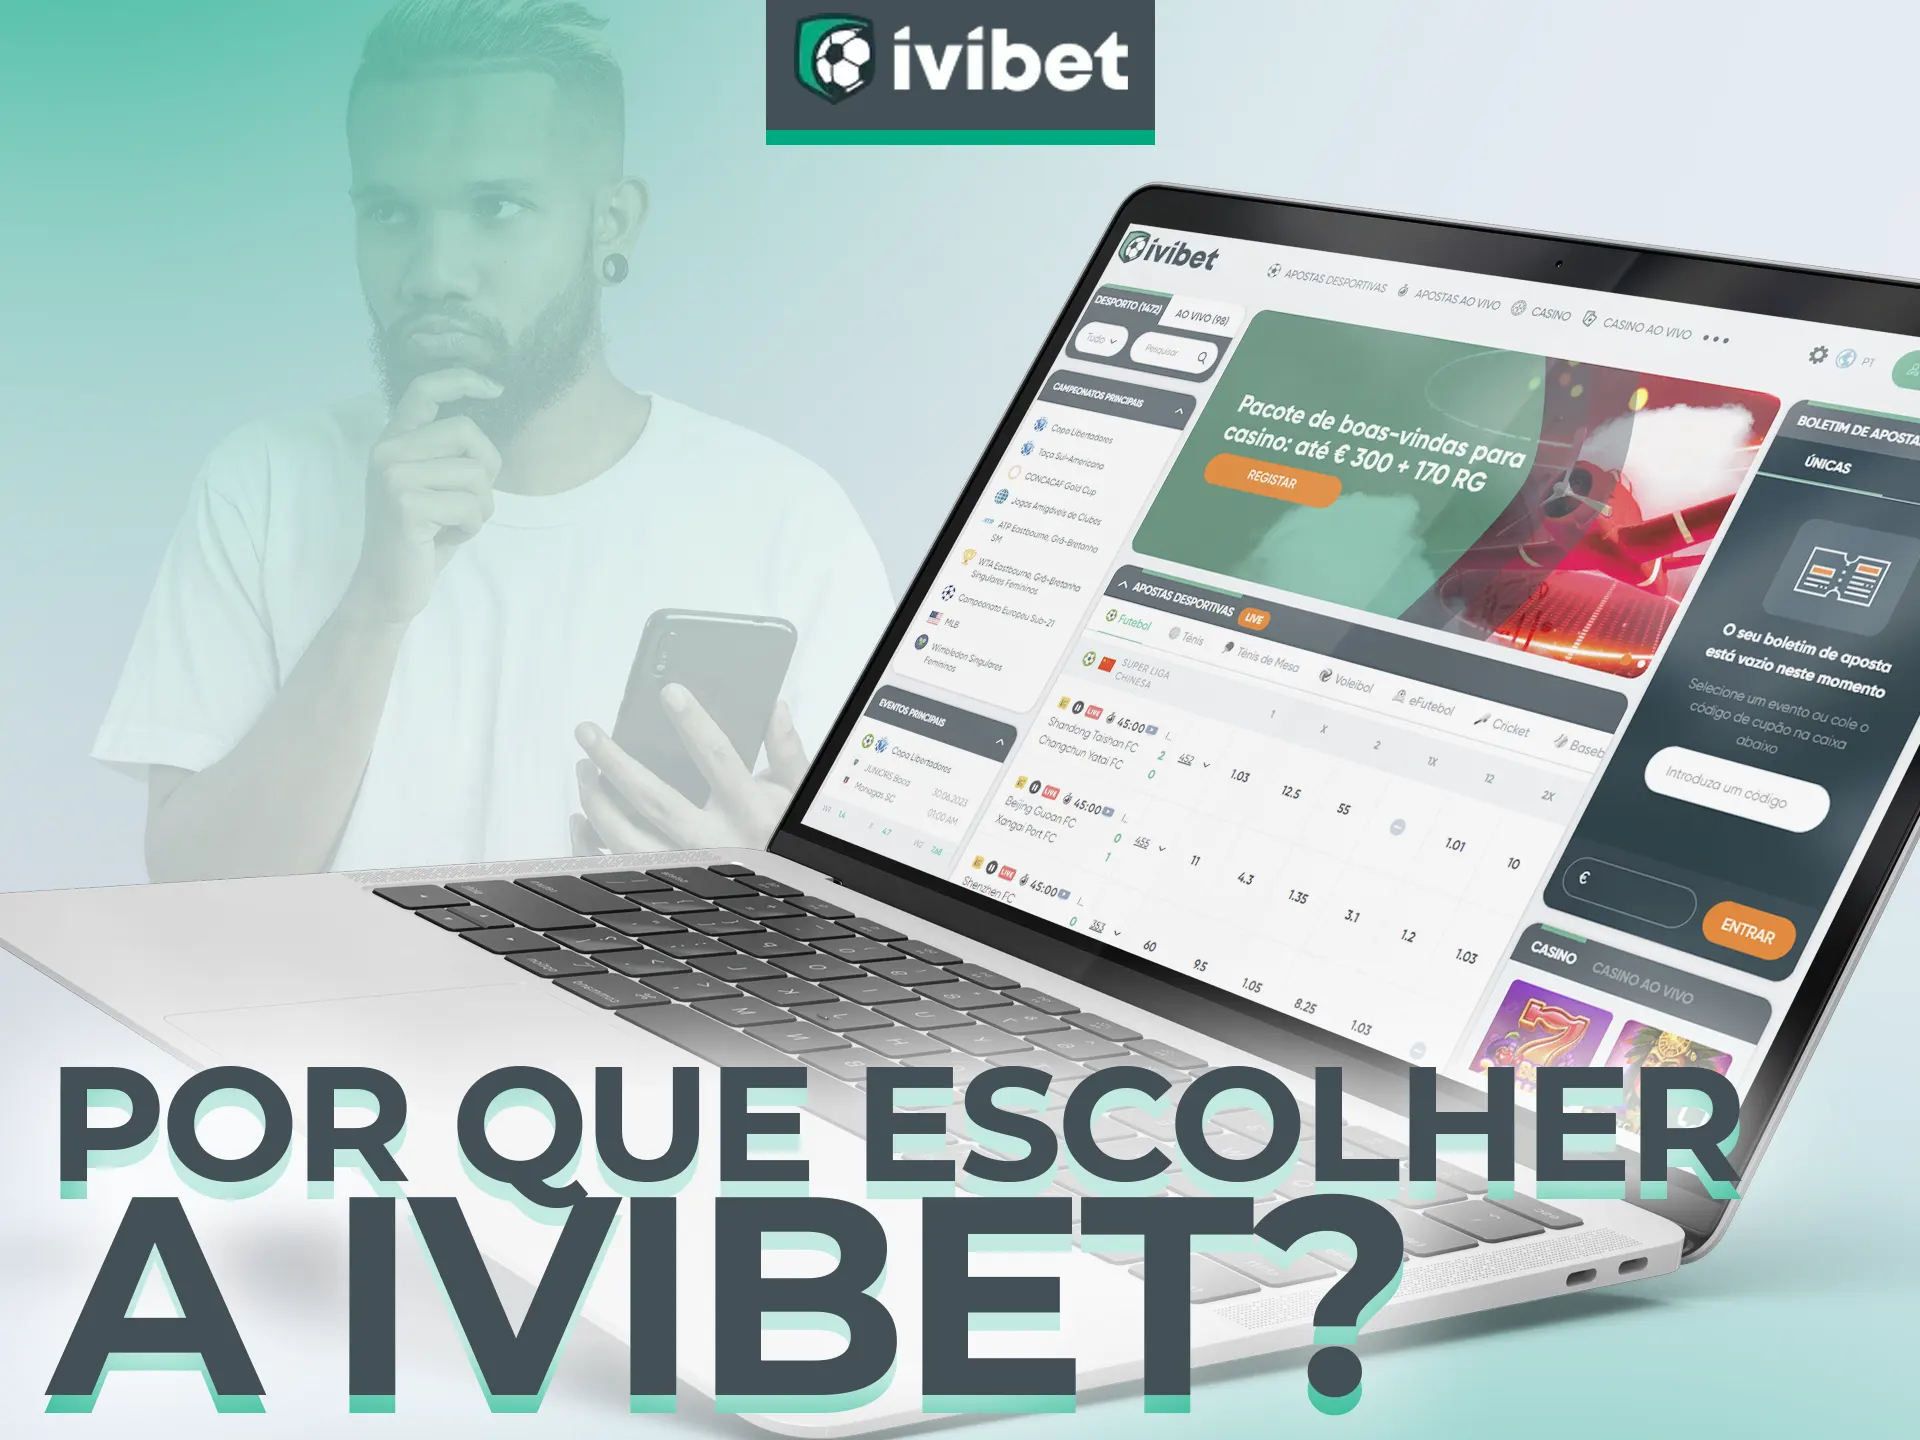 Descubra se você pode participar do programa de afiliados da Ivibet.